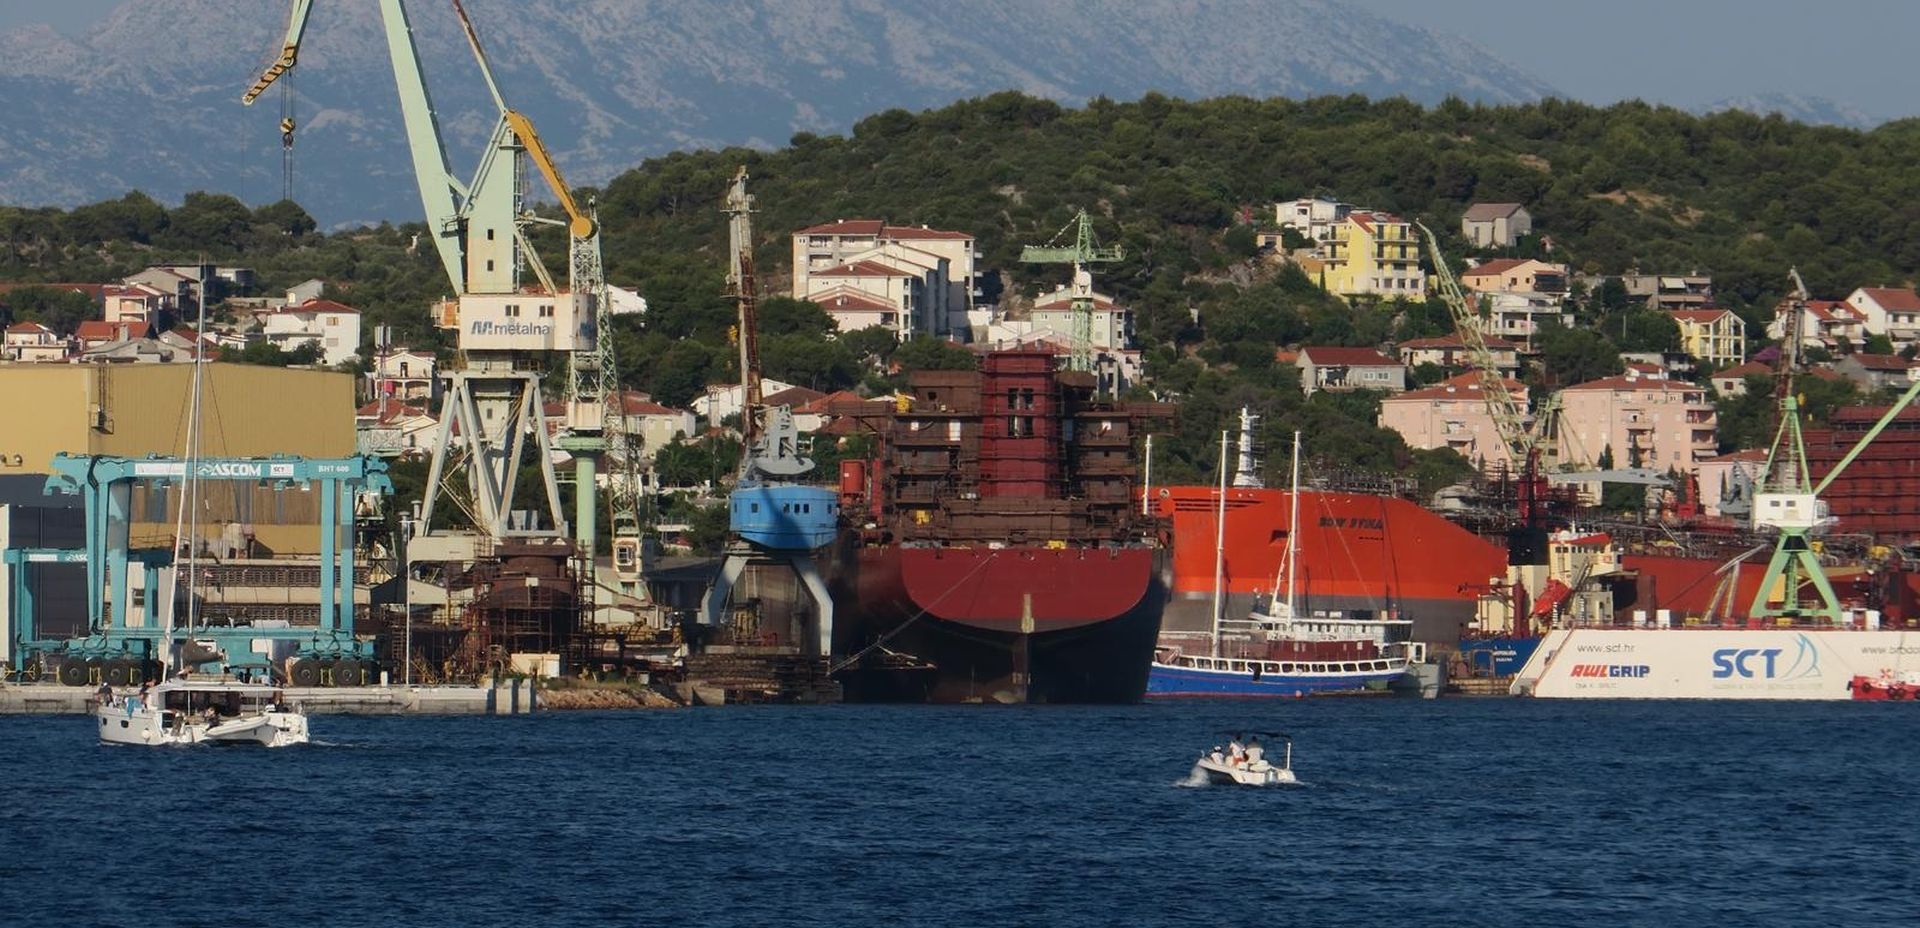 25.07.2016., Pogled s mora na trogirsko brodogradiliste Brodotrogir.
Photo: Ivo Cagalj/PIXSELL